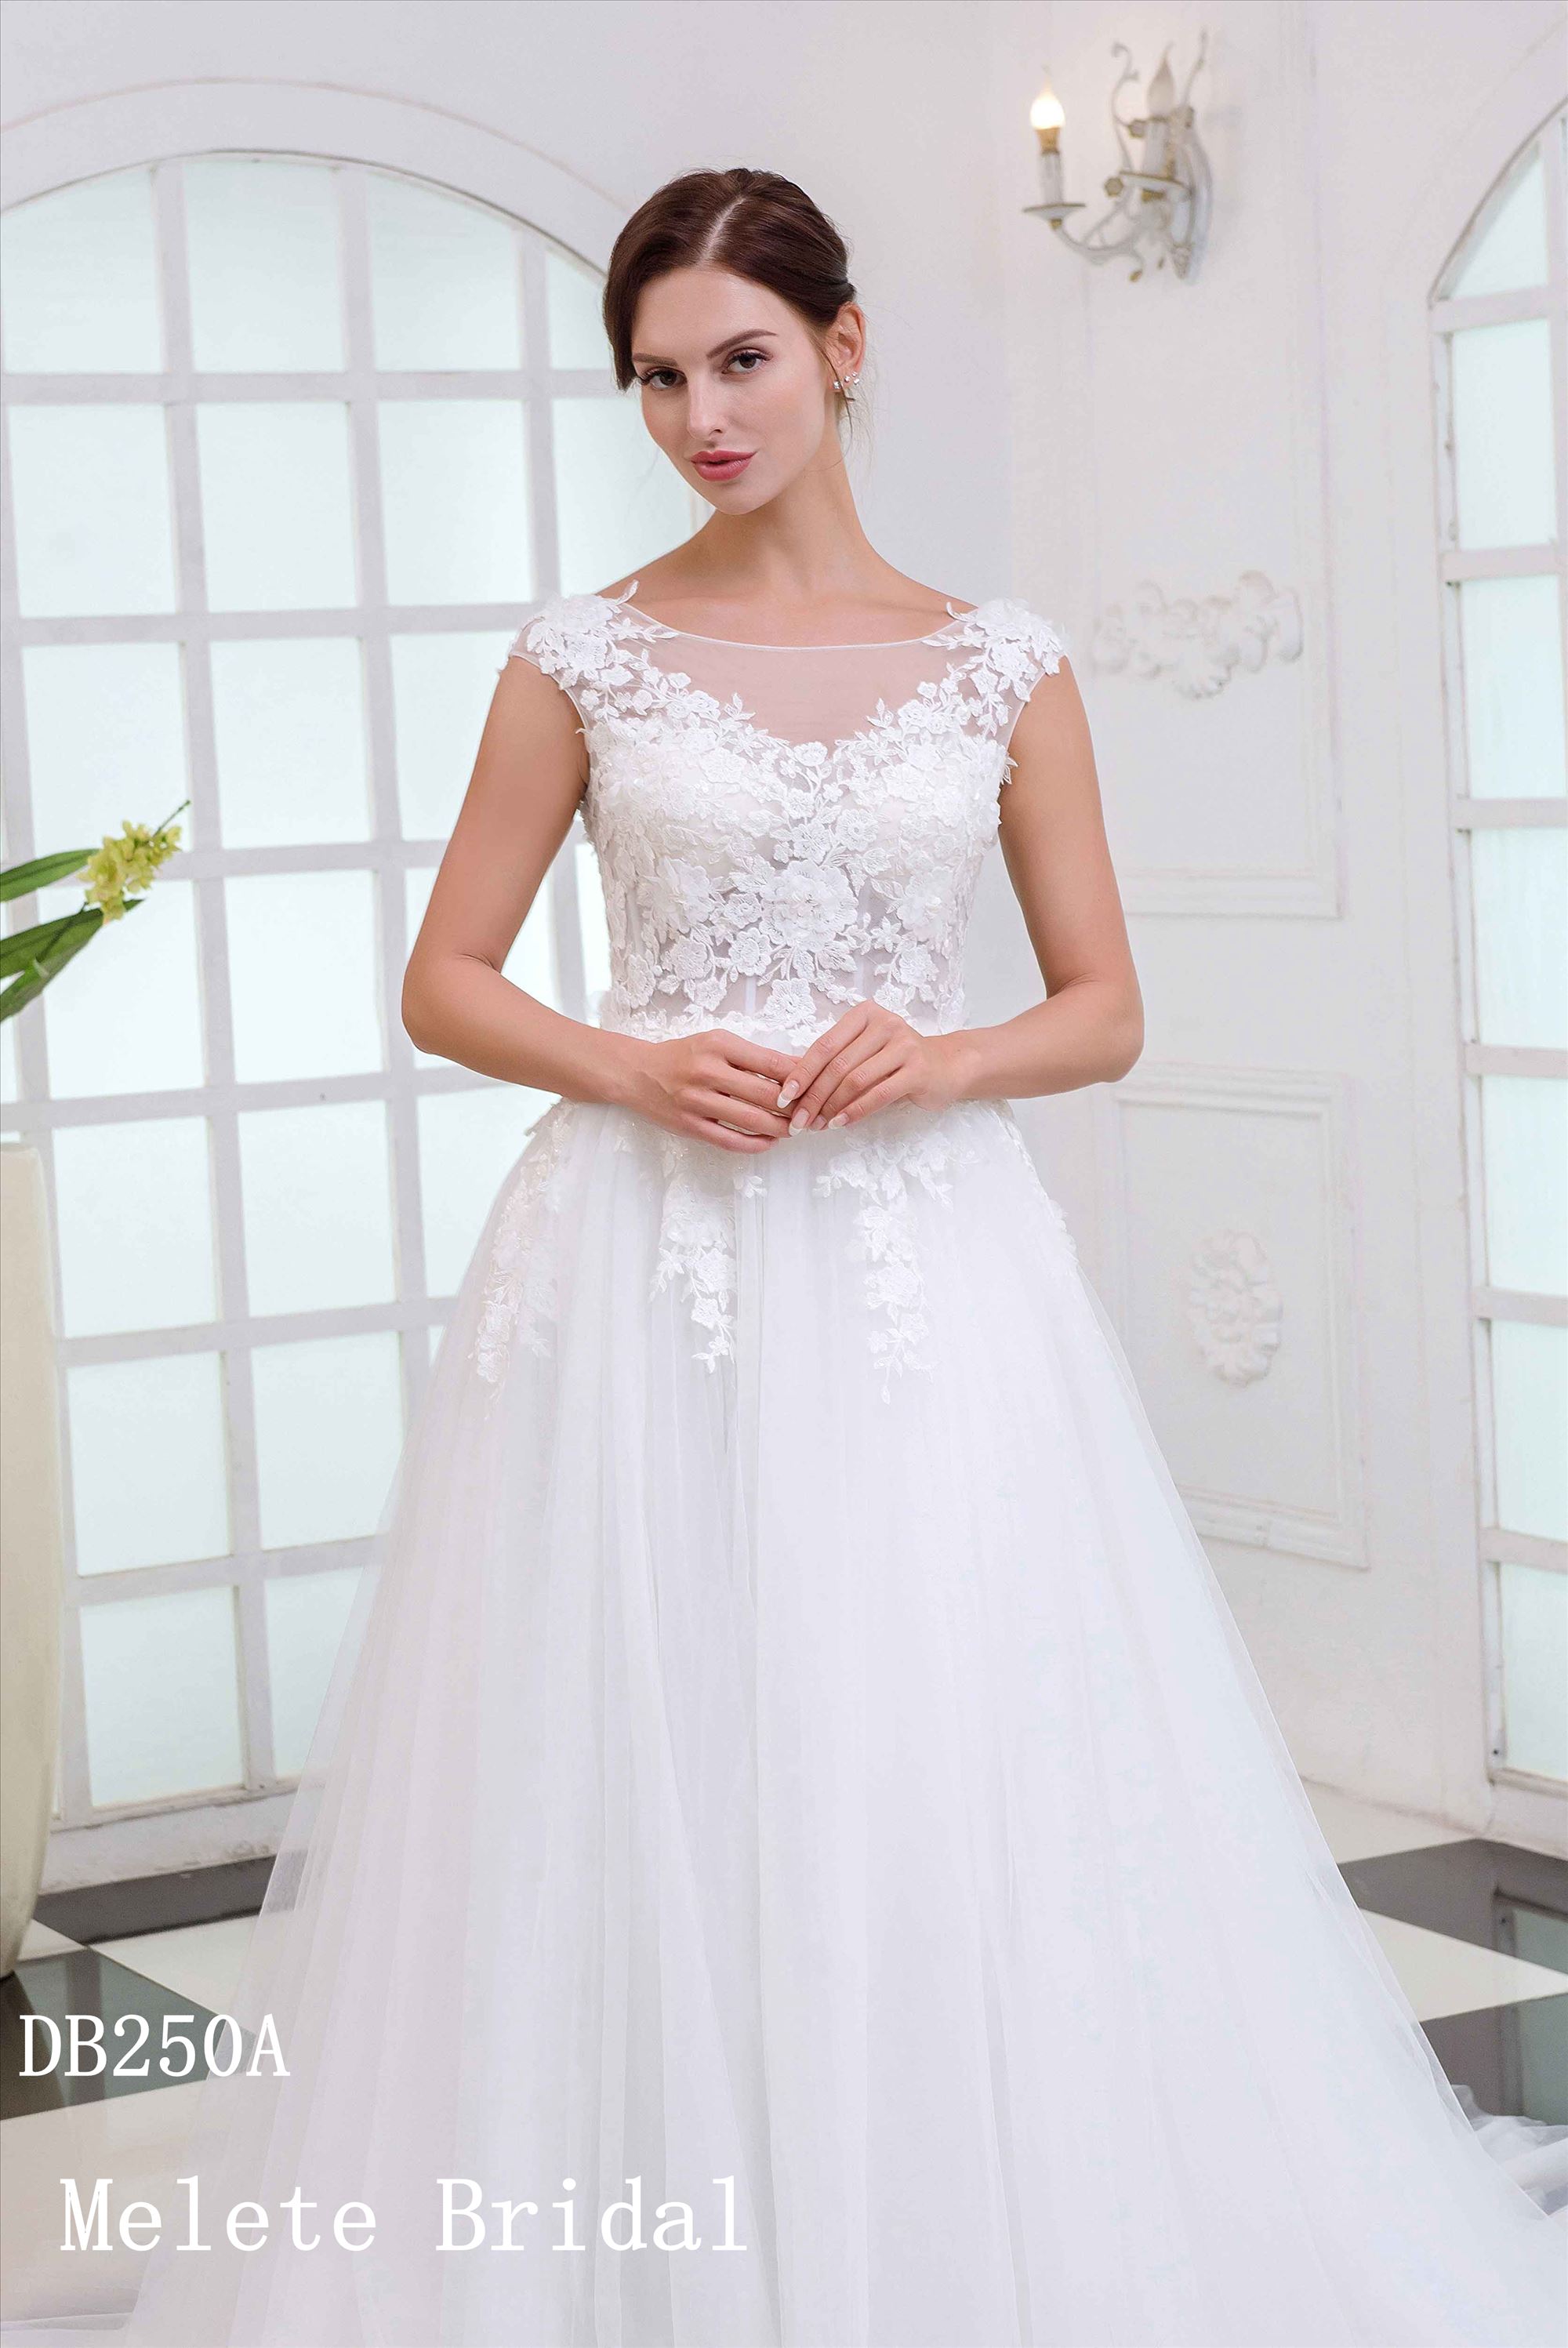 3D flowers cap sleeves light design bridal gown beach garden style wedding dress